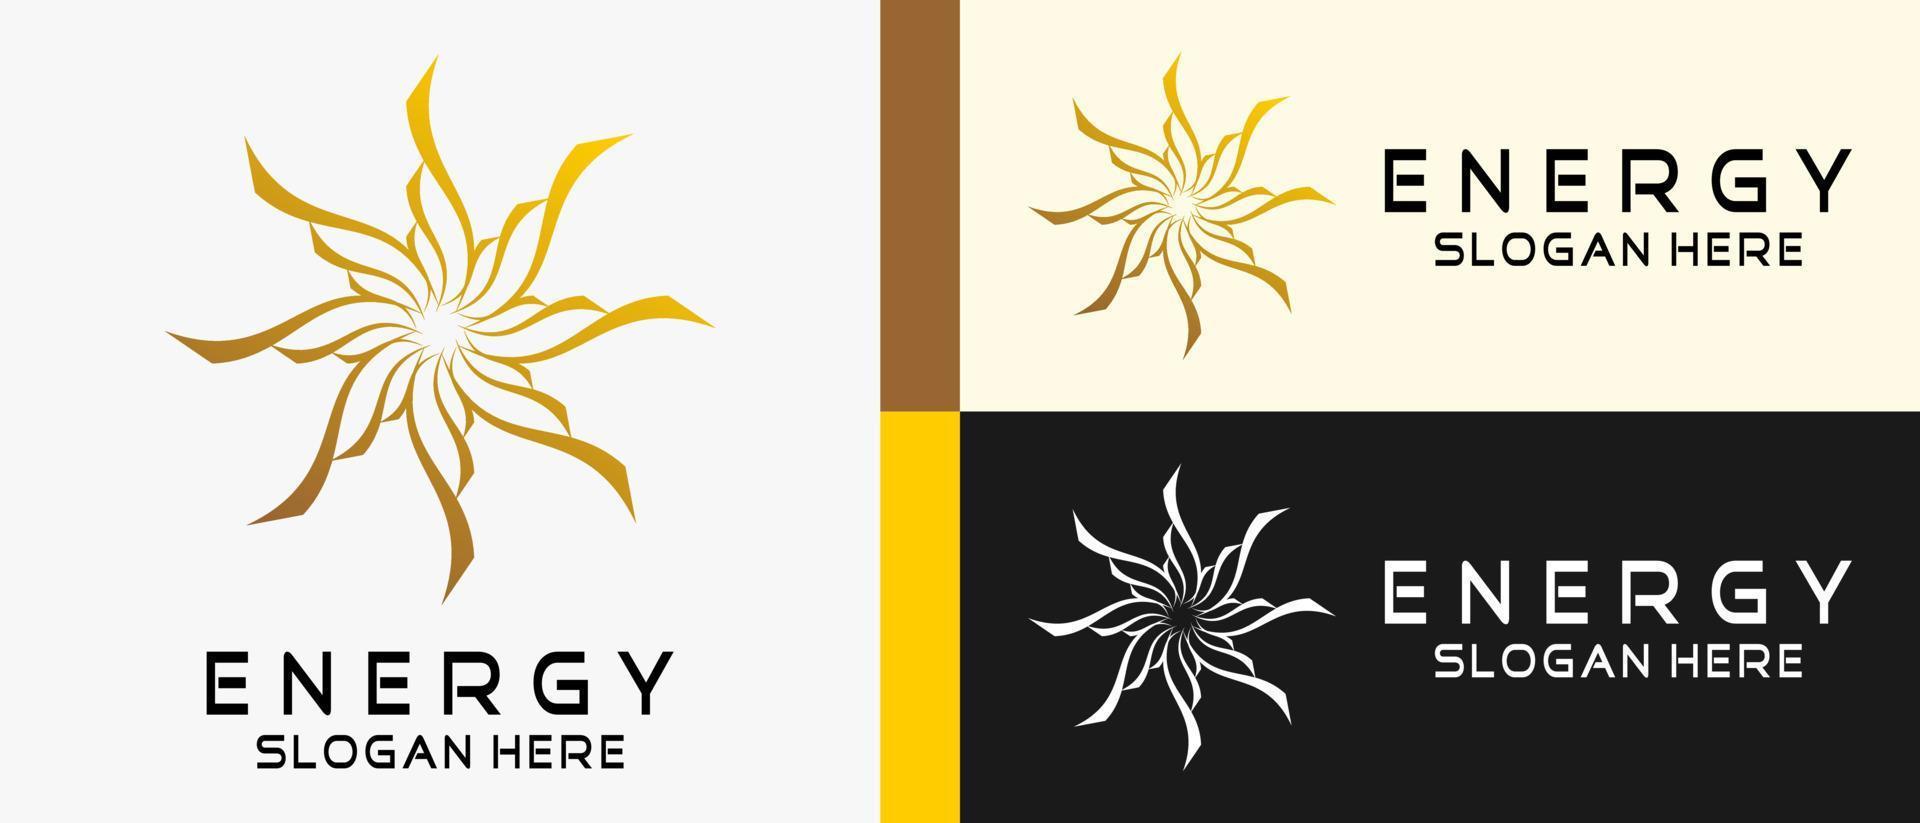 plantilla de diseño de logotipo de energía con concepto abstracto creativo de arte giratorio en forma de flor. ilustración de logotipo de vector premium